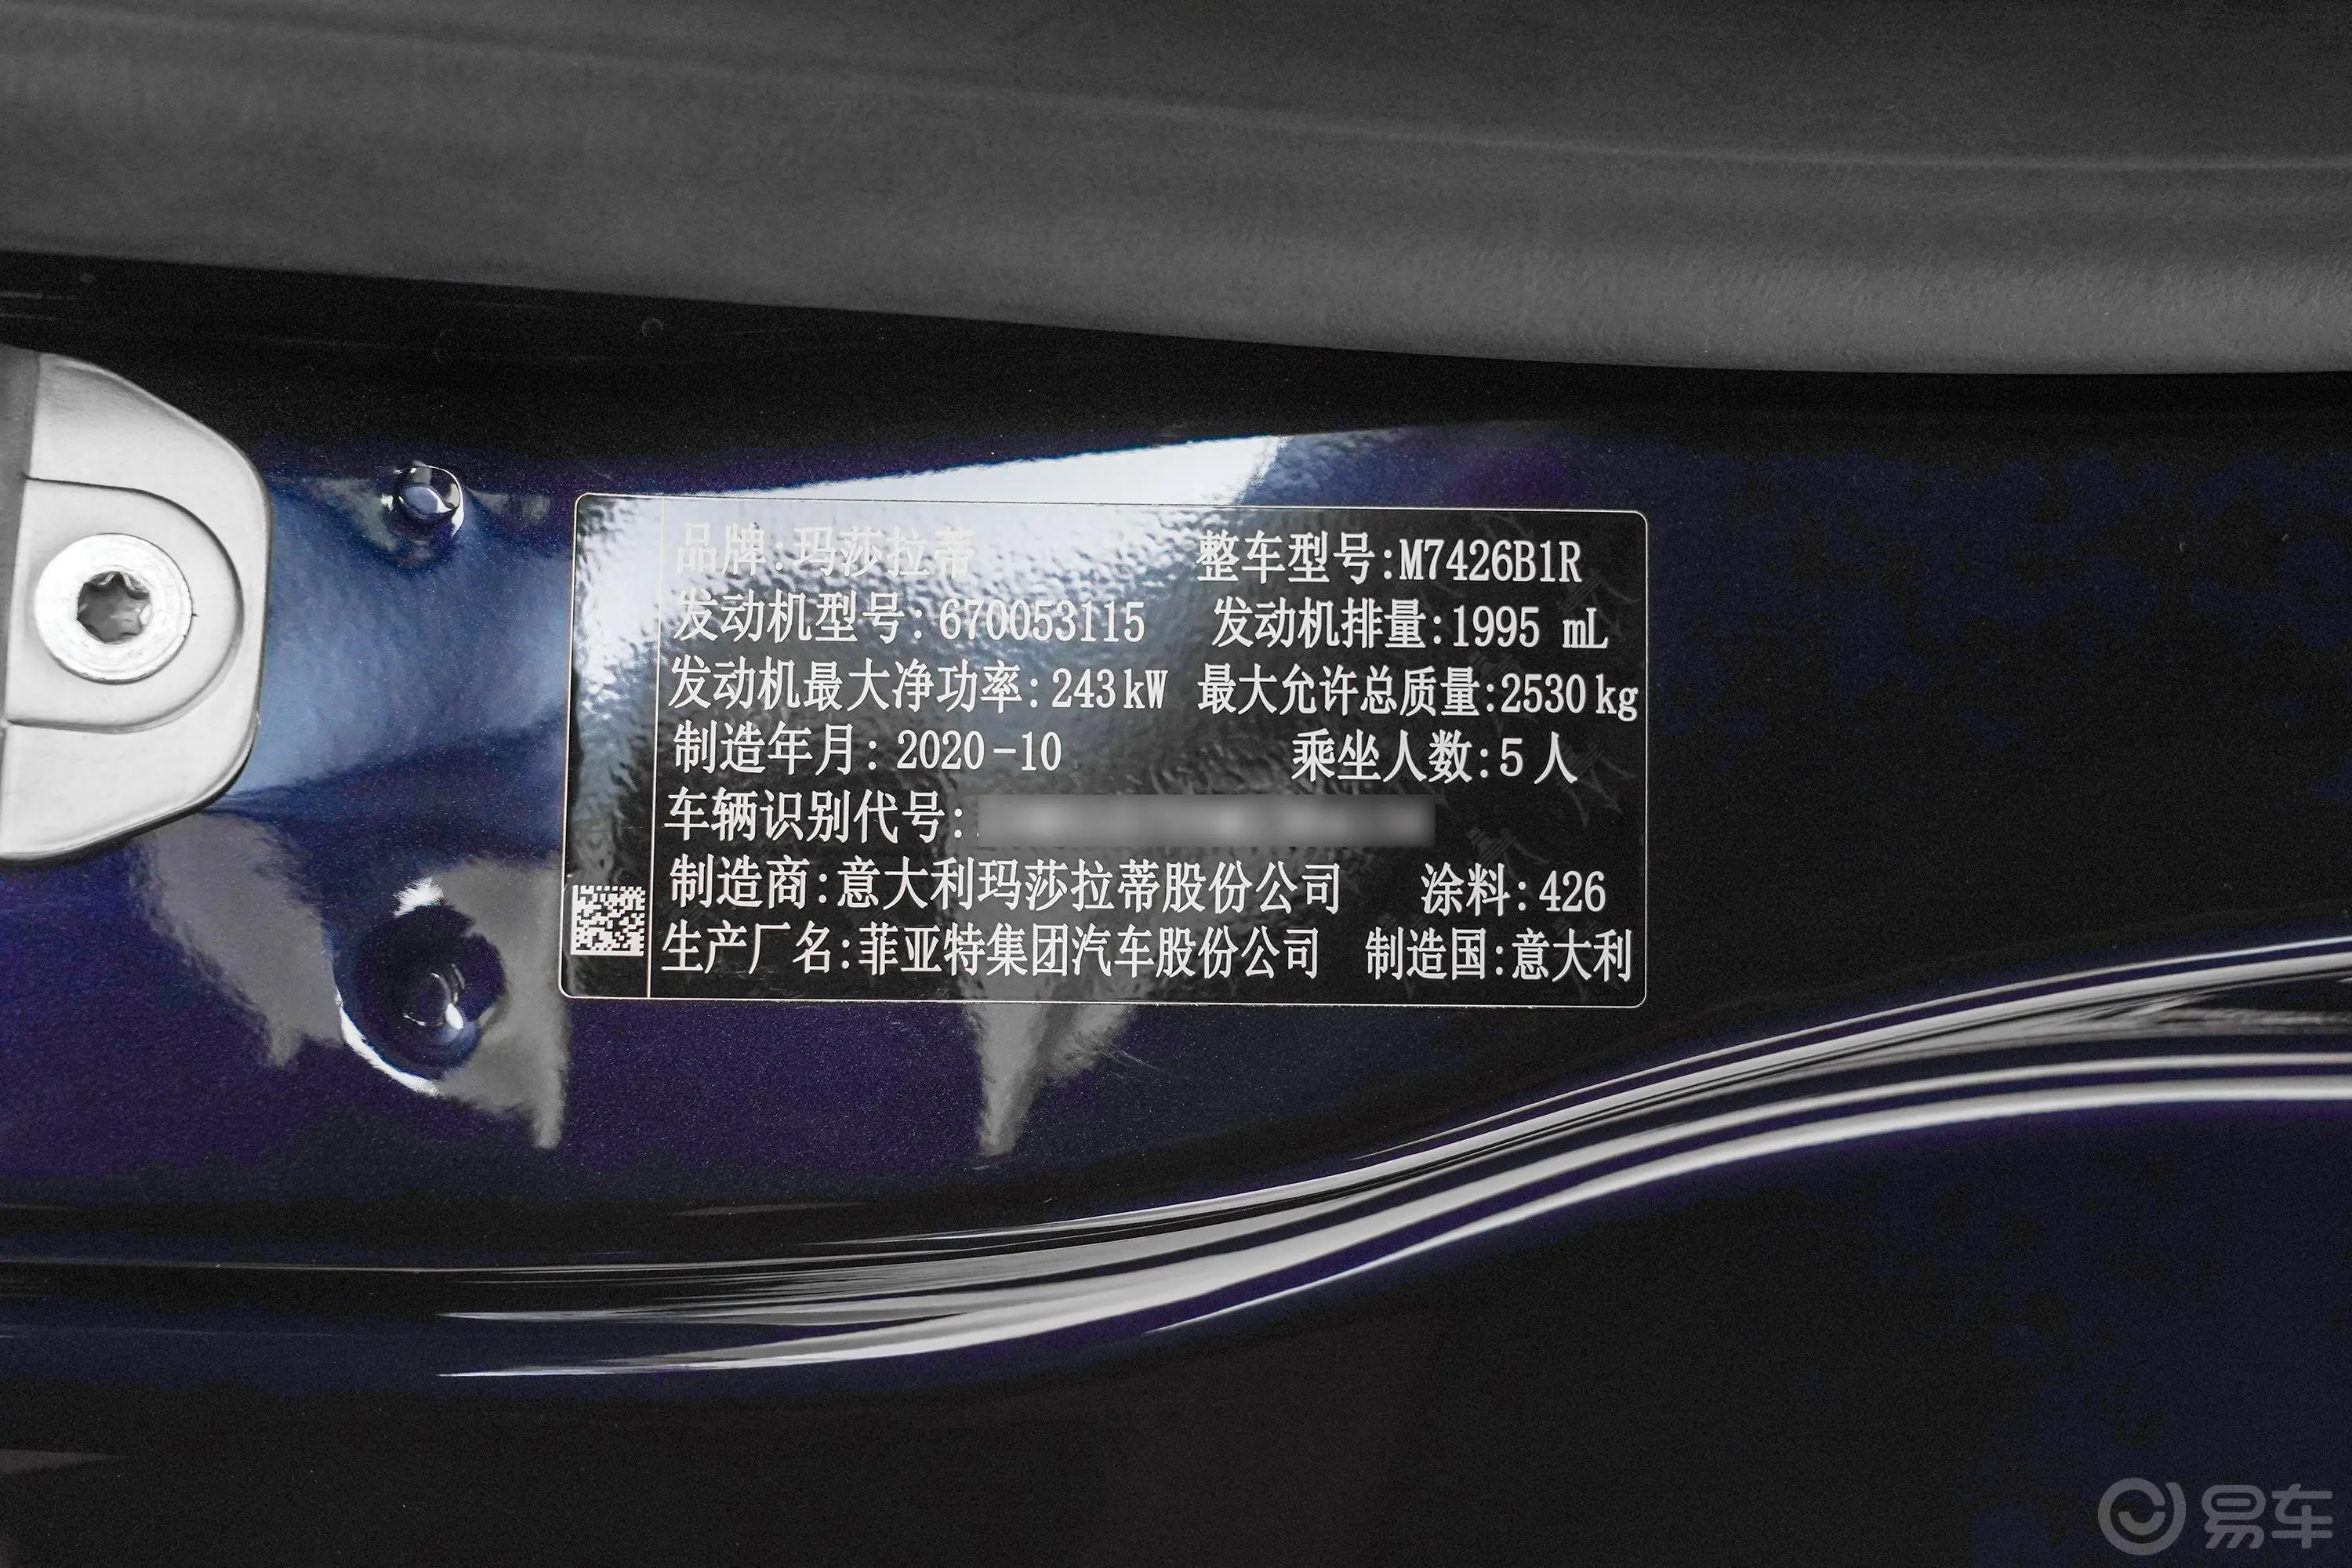 Ghibli2.0T 锋芒版车辆信息铭牌